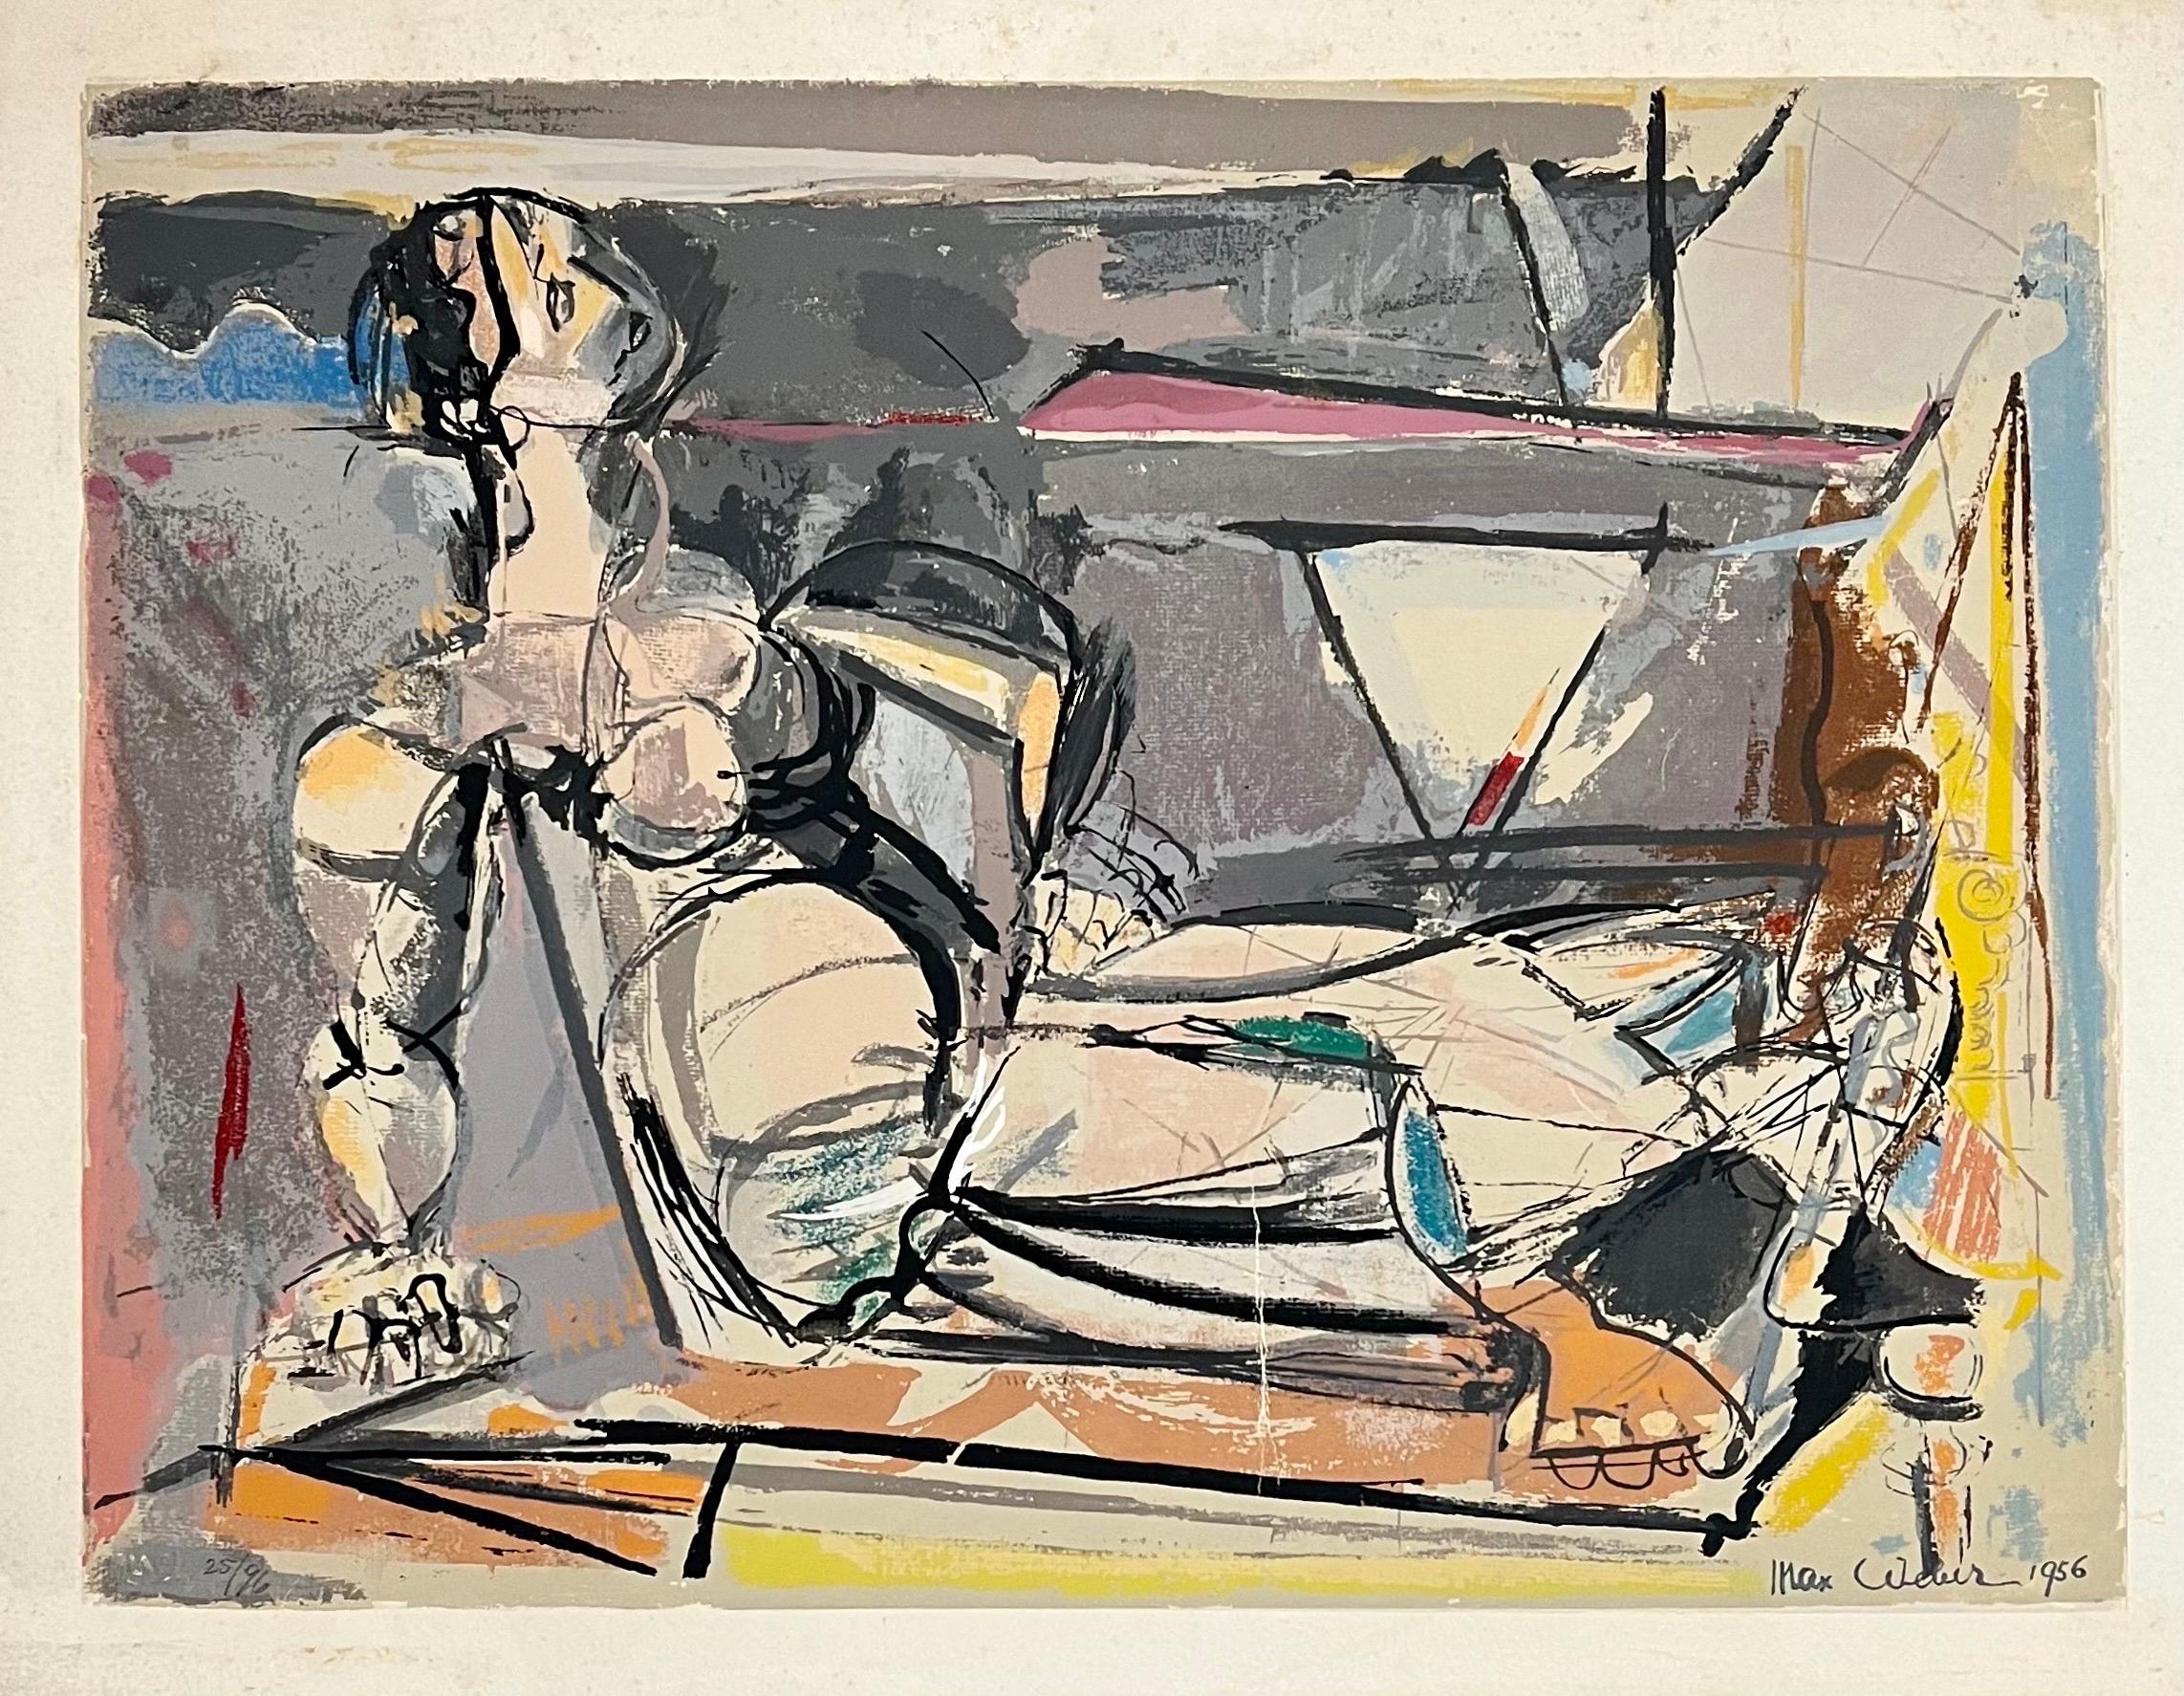 Femme nue cubiste couchée

Max Weber (18 avril 1881 - 4 octobre 1961) était un peintre juif américain et l'un des premiers peintres cubistes américains qui, plus tard, s'est tourné vers des thèmes juifs plus figuratifs dans son art. Il est surtout